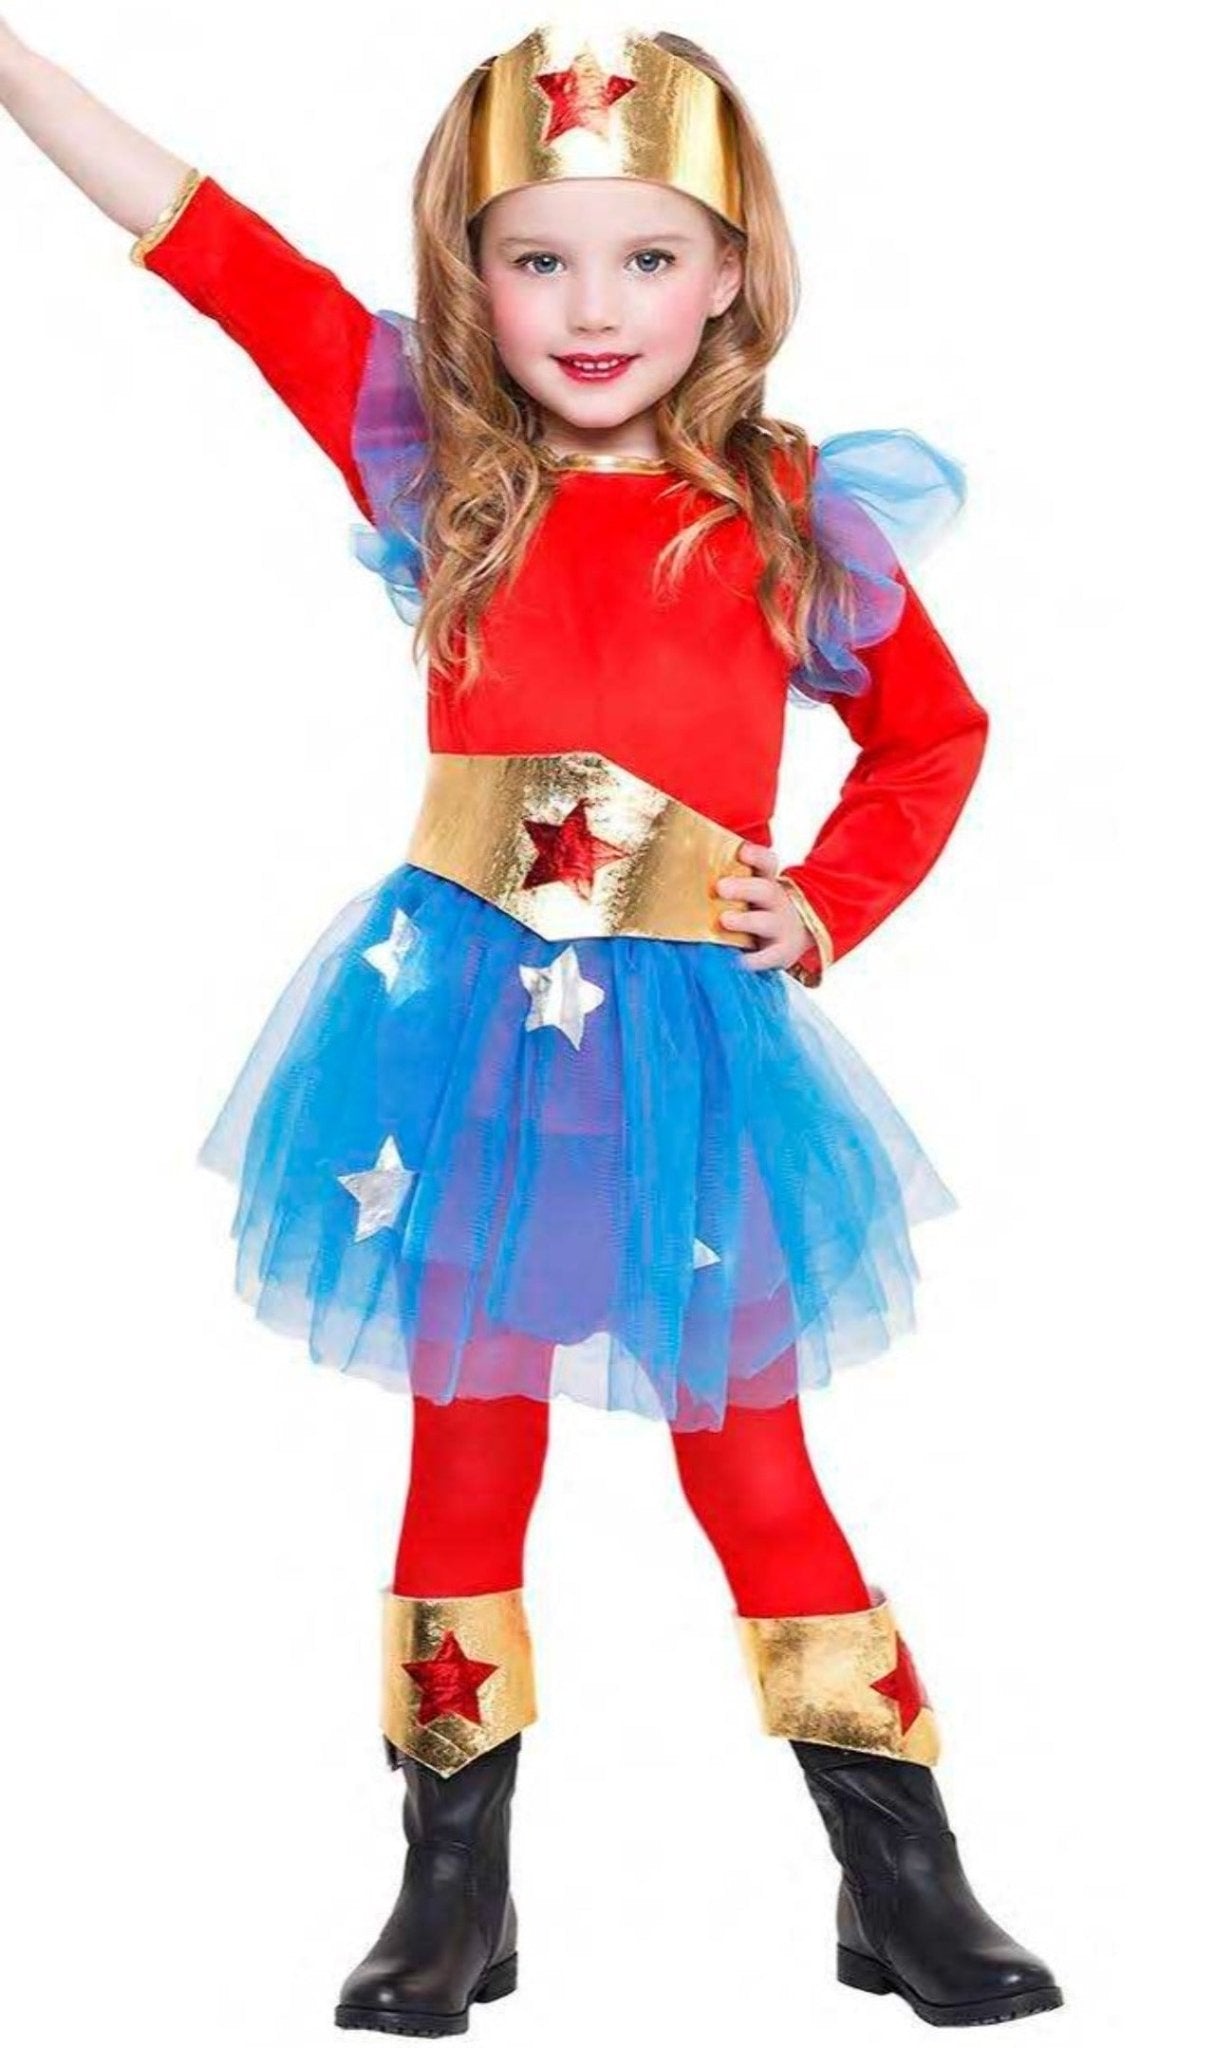 Disfraz de Superheroína Roja y Azul para mujer